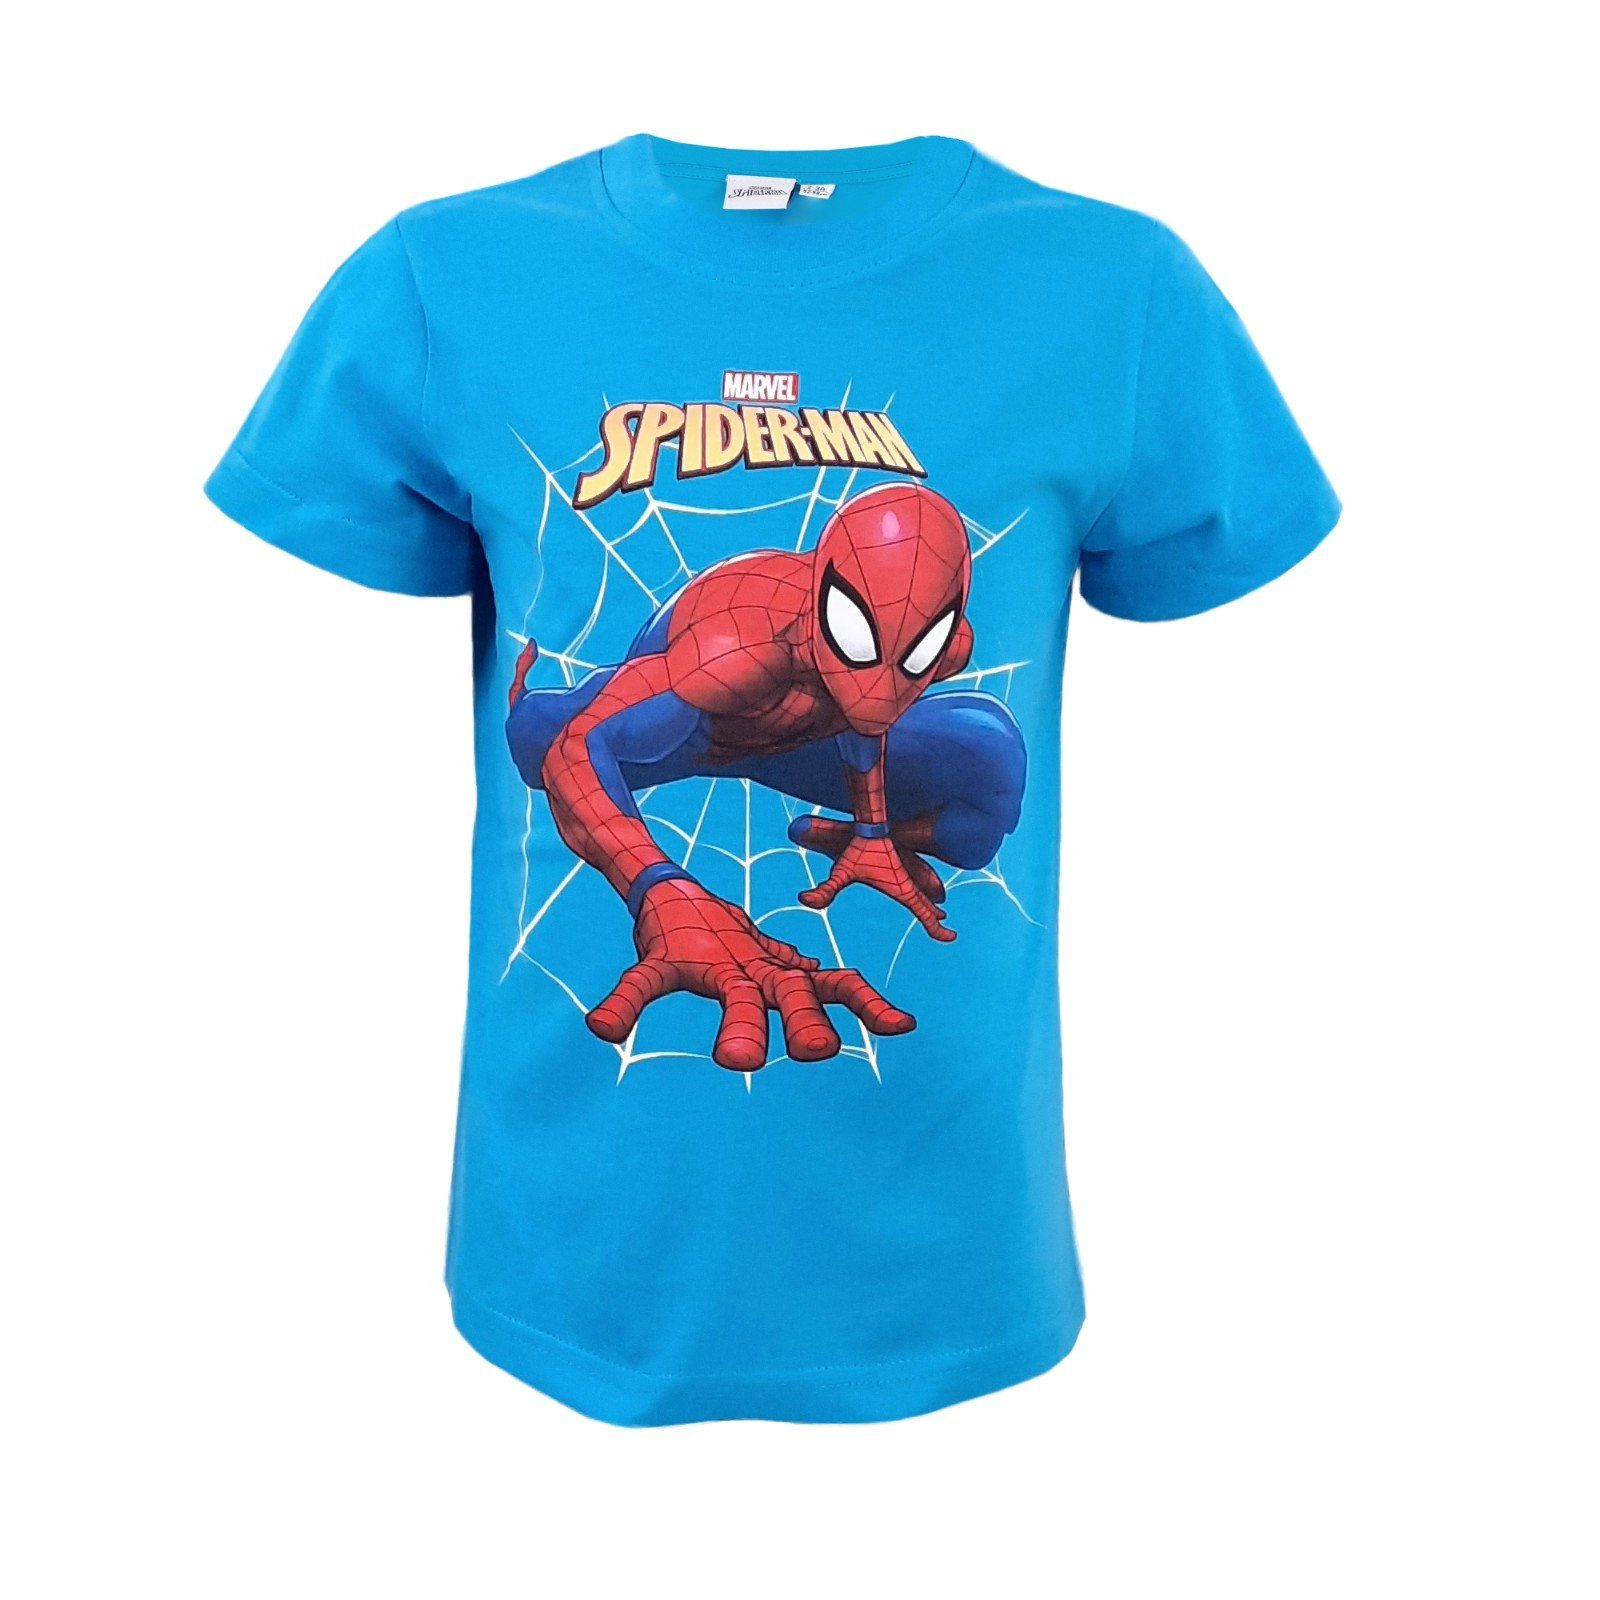 MARVEL T-Shirt »Spider-Man Jungen kurzarm Shirt« Gr. 92/98, Baumwolle  online kaufen | OTTO